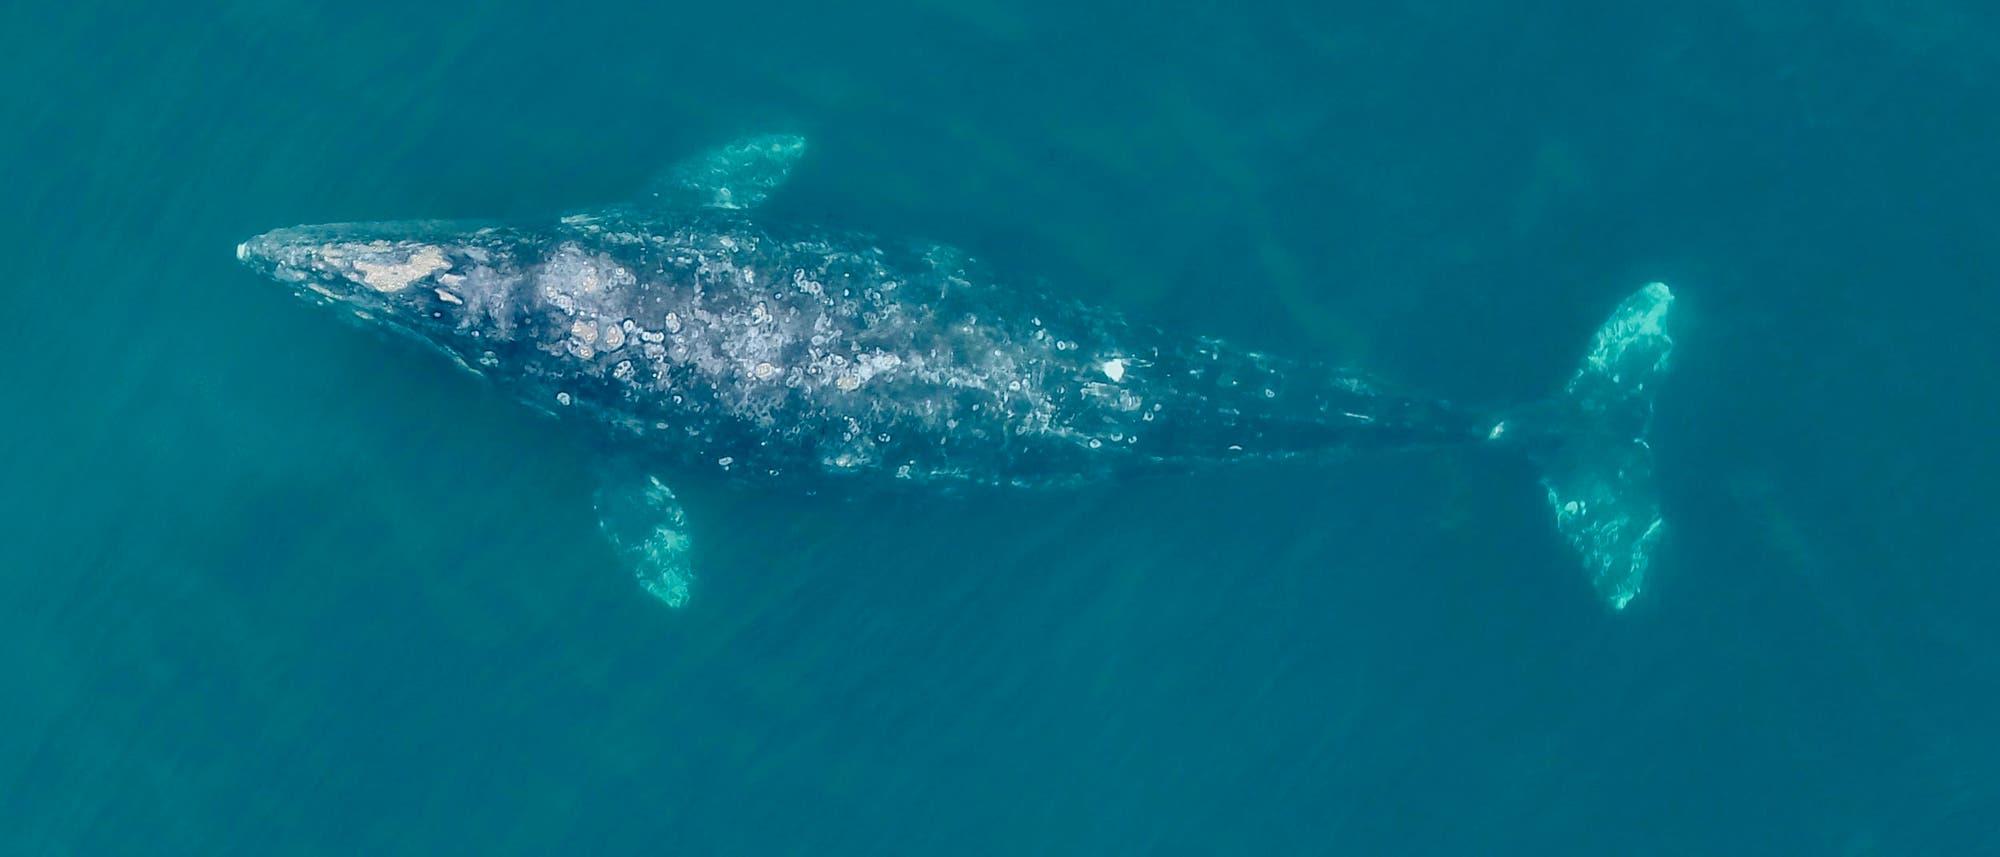 Ein Grauwal schwimmt durch das blaue Meer. Das Bild wurde von einer Drohne gemacht und zeigt den gesamten Wal, der sich nahe der Oberfläche befindet und dessen Rücken teilweise aus dem Wasser herausschaut.